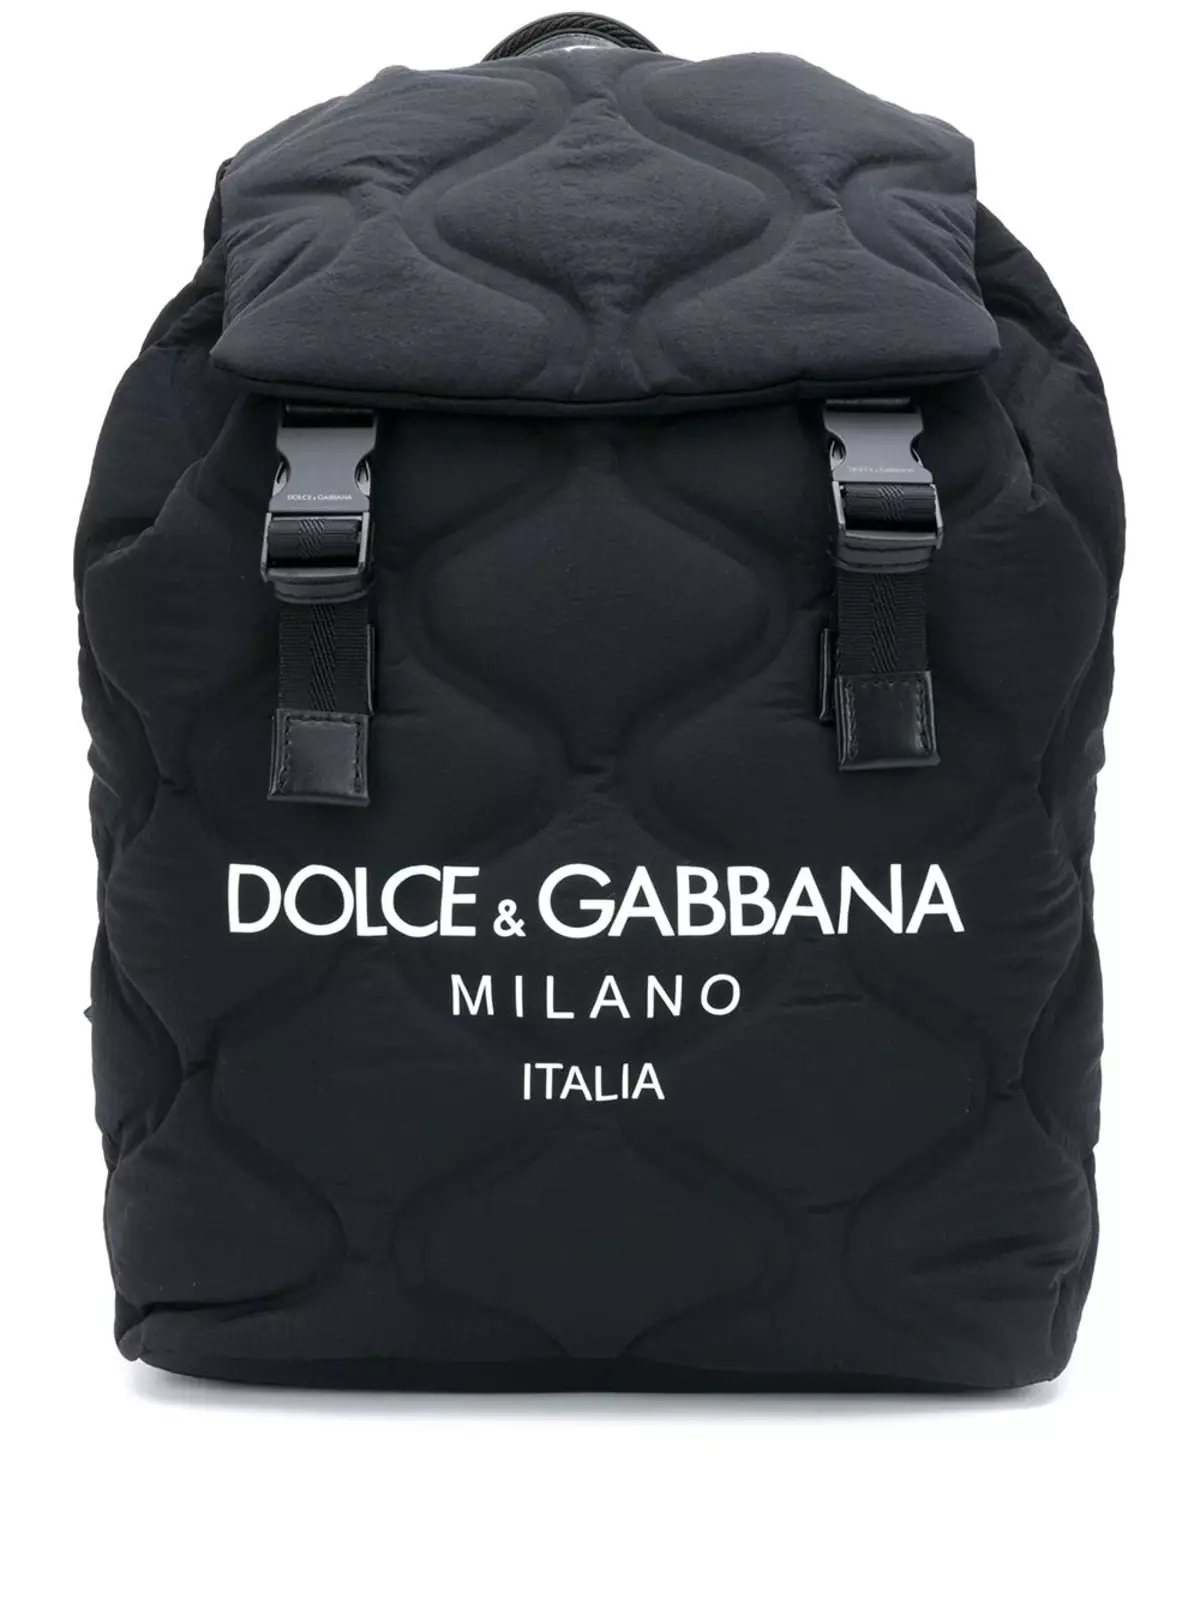 Dolce & Gabbana Ryggsäckar: Kvinna och Mäns, Svart och Röd, Läder Ryggsäckar Väskor och andra modeller. Hur skiljer du originalet från kopian? 2559_32